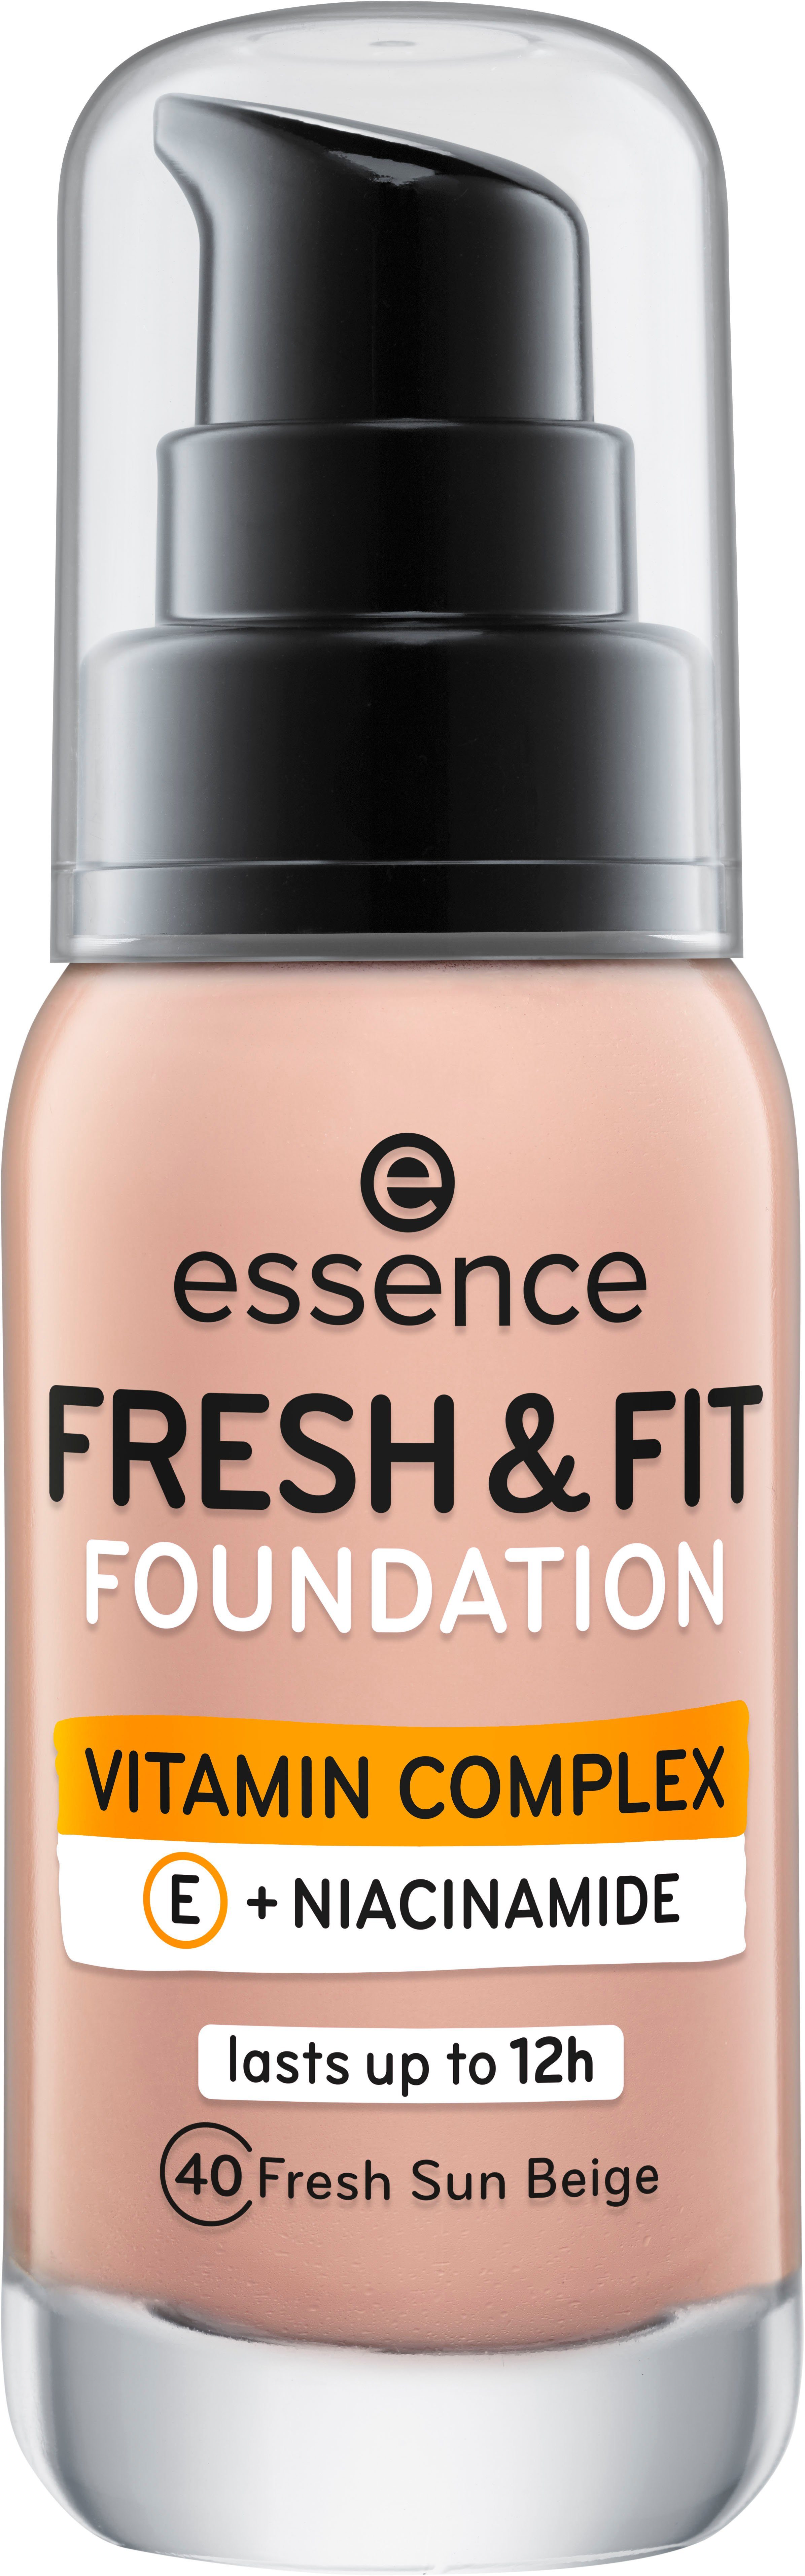 FRESH Foundation FIT FOUNDATION, fresh & beige sun 3-tlg. Essence